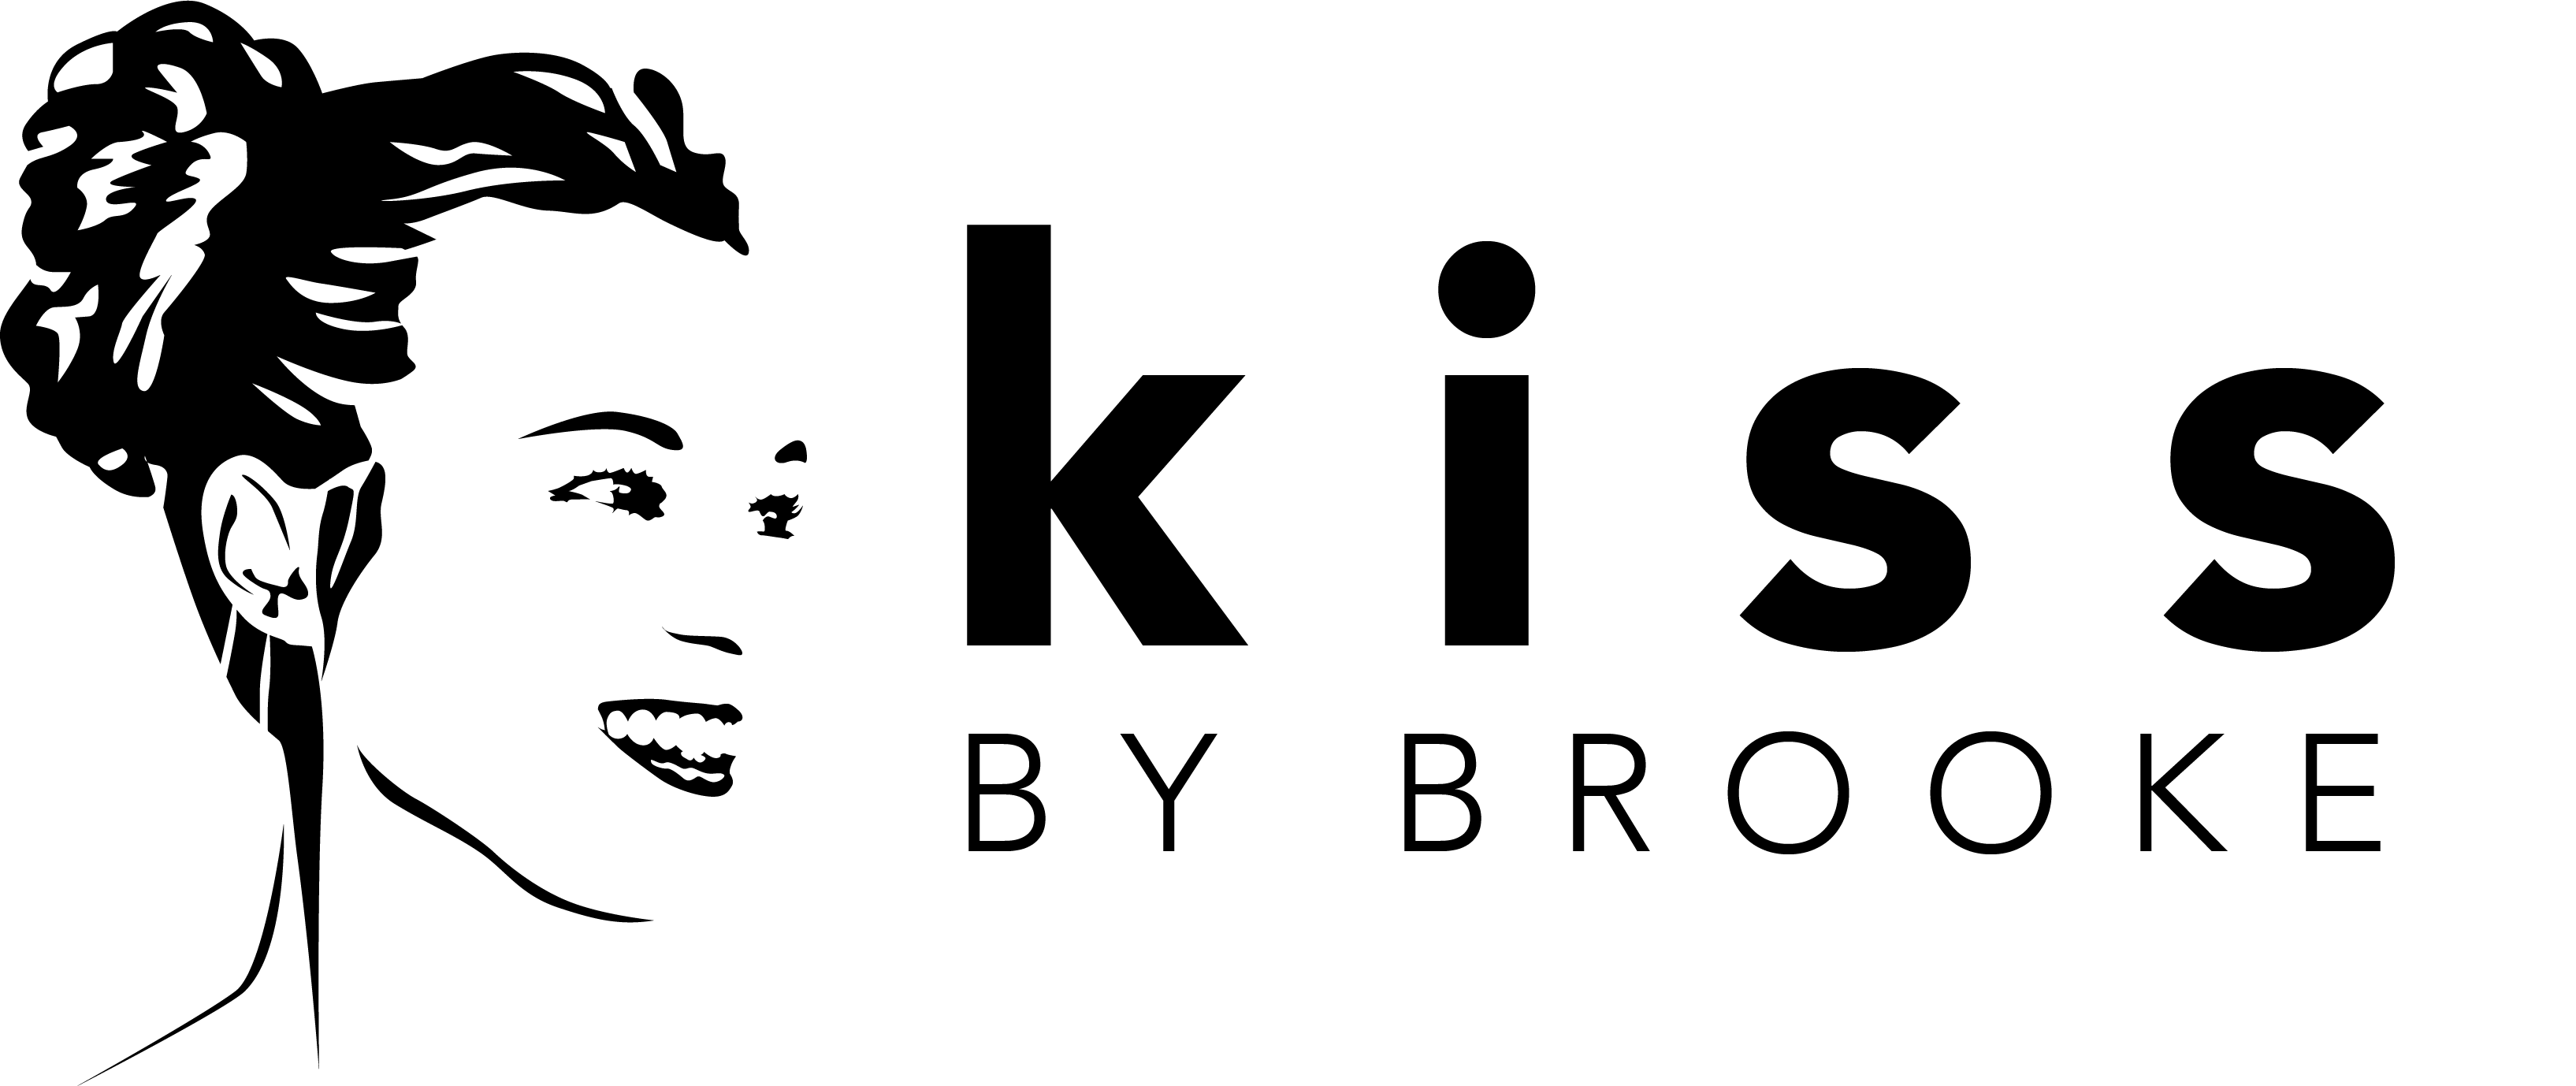 KBB Logo - kbb-logo-1-062317